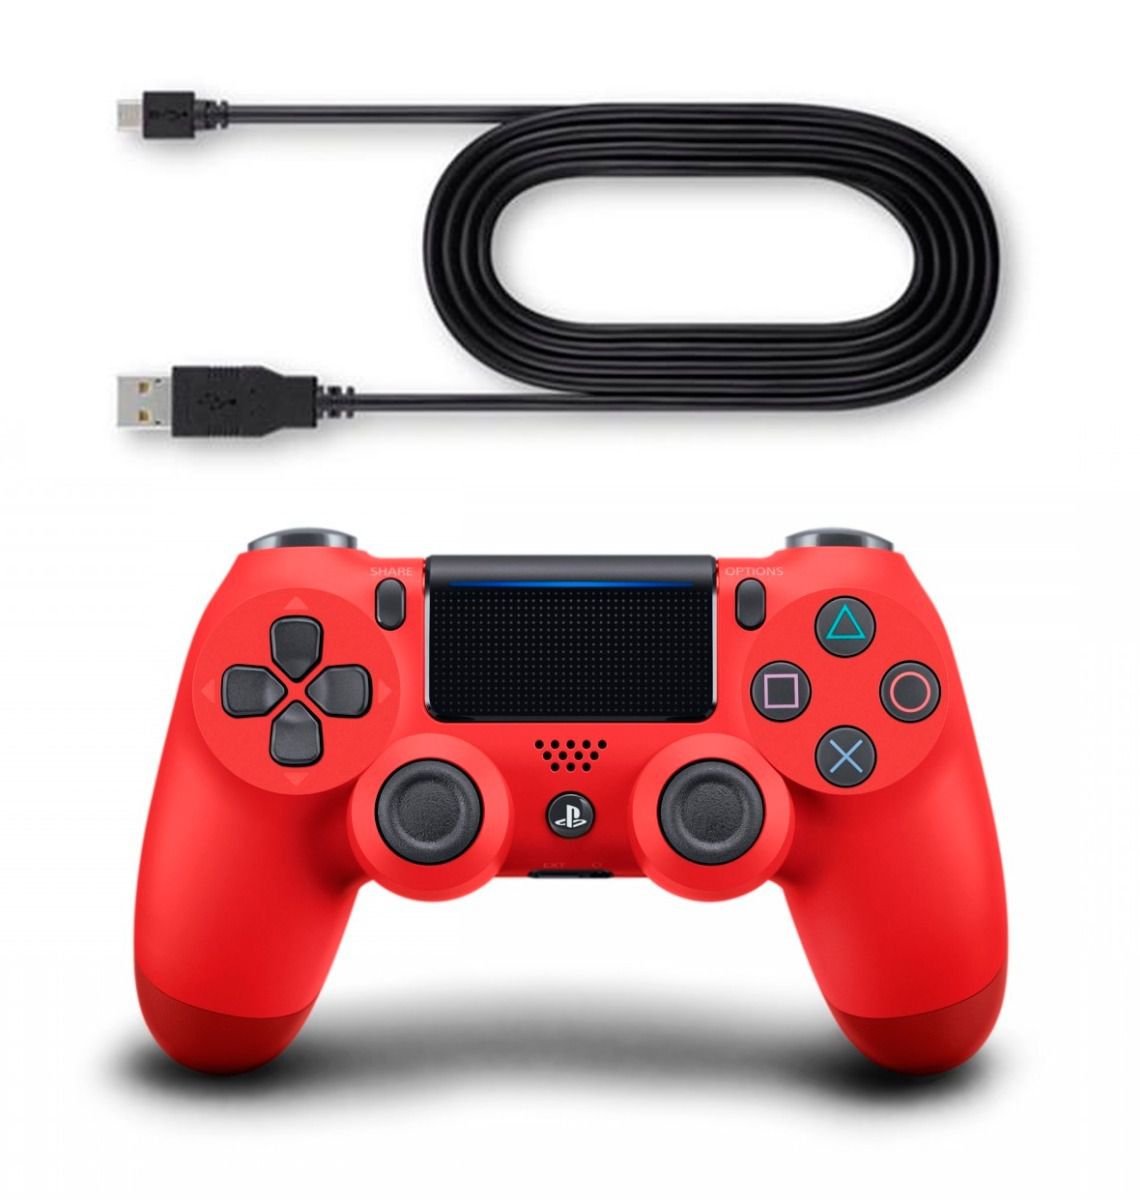 Cabo usb PS4 - Para carregar controle PS4 - Get Game